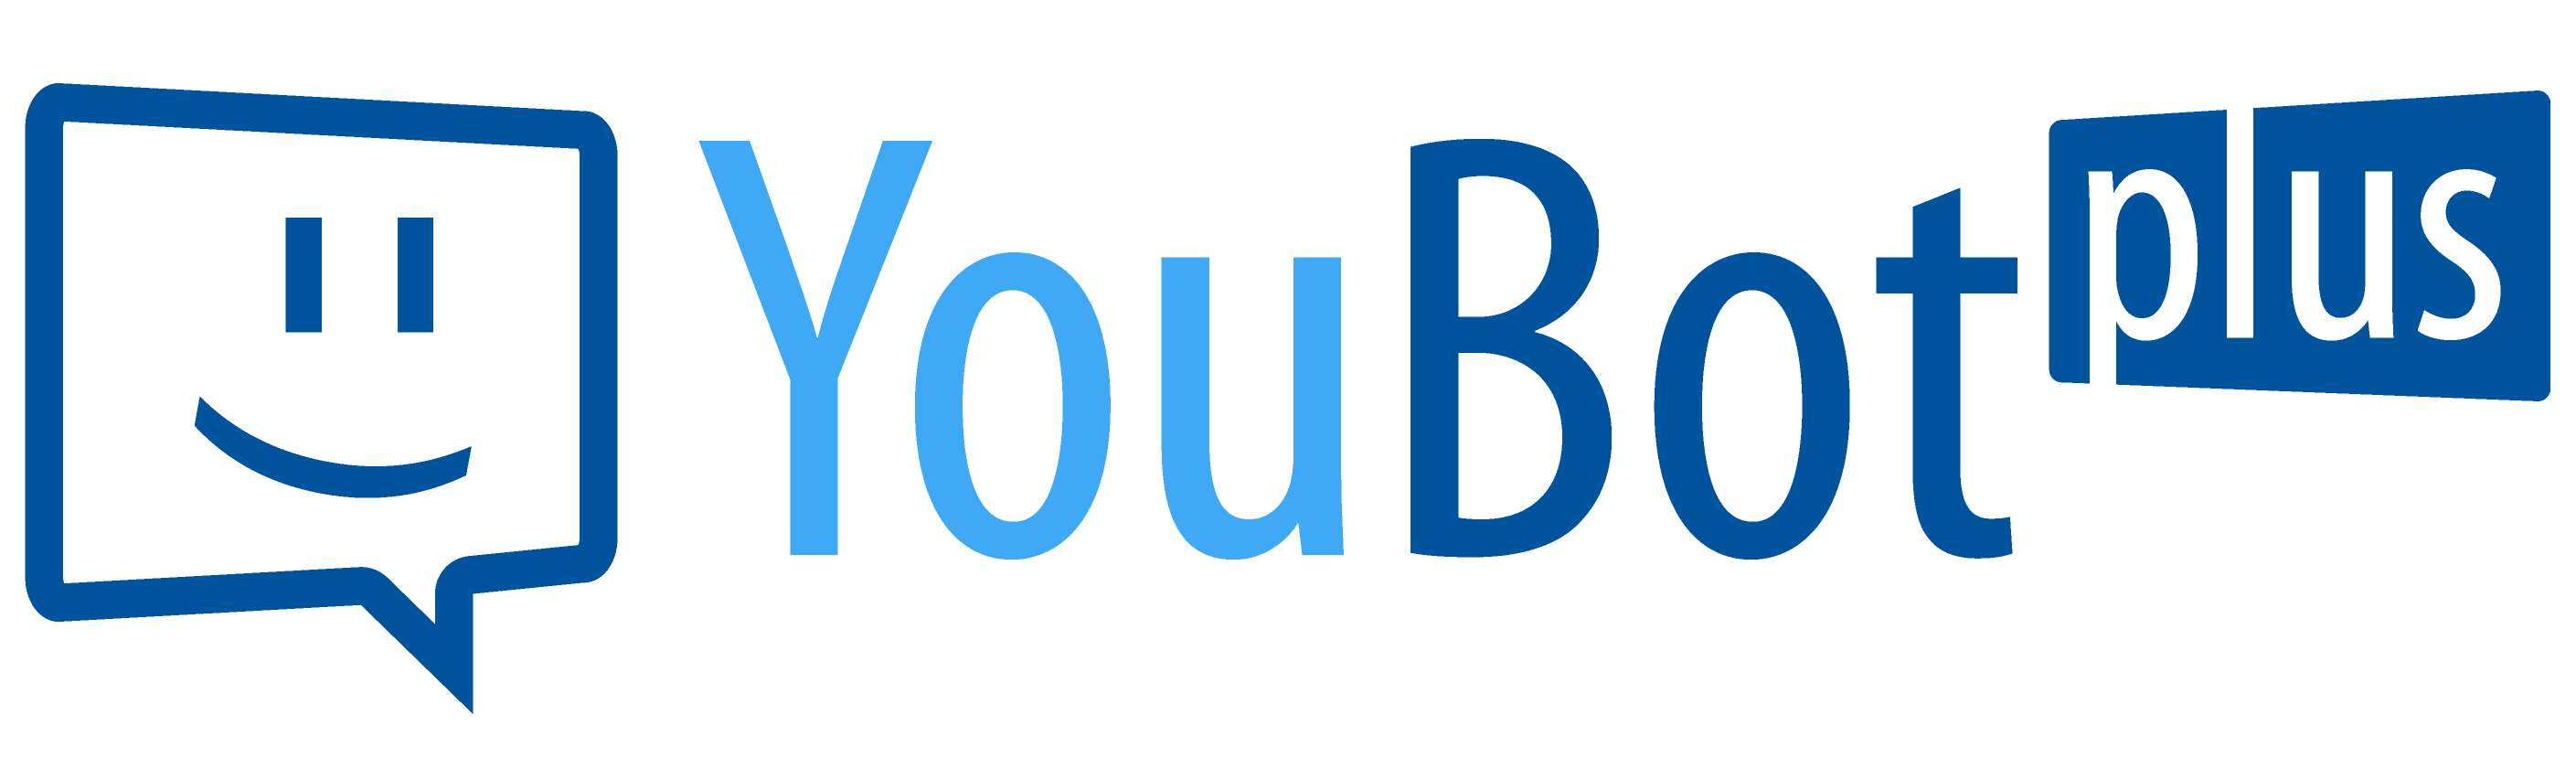 YouBot plus - Der smarte Bewerbungsassistent